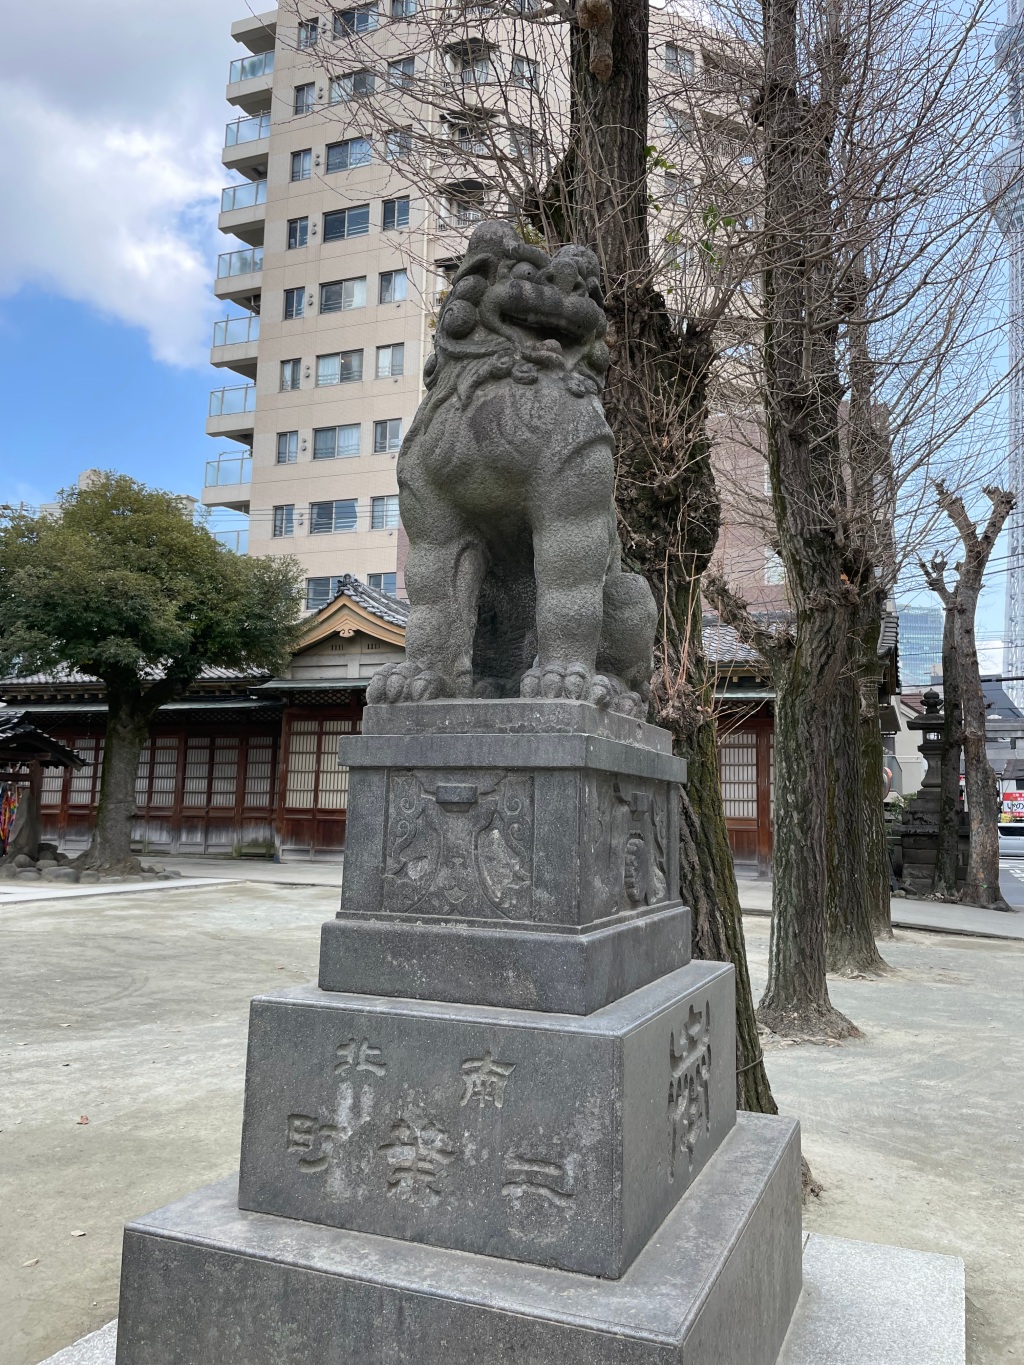 Ushijima Schrein in Asakusa: Dein ultimativer Guide für traditionelle Vibes und gute Laune